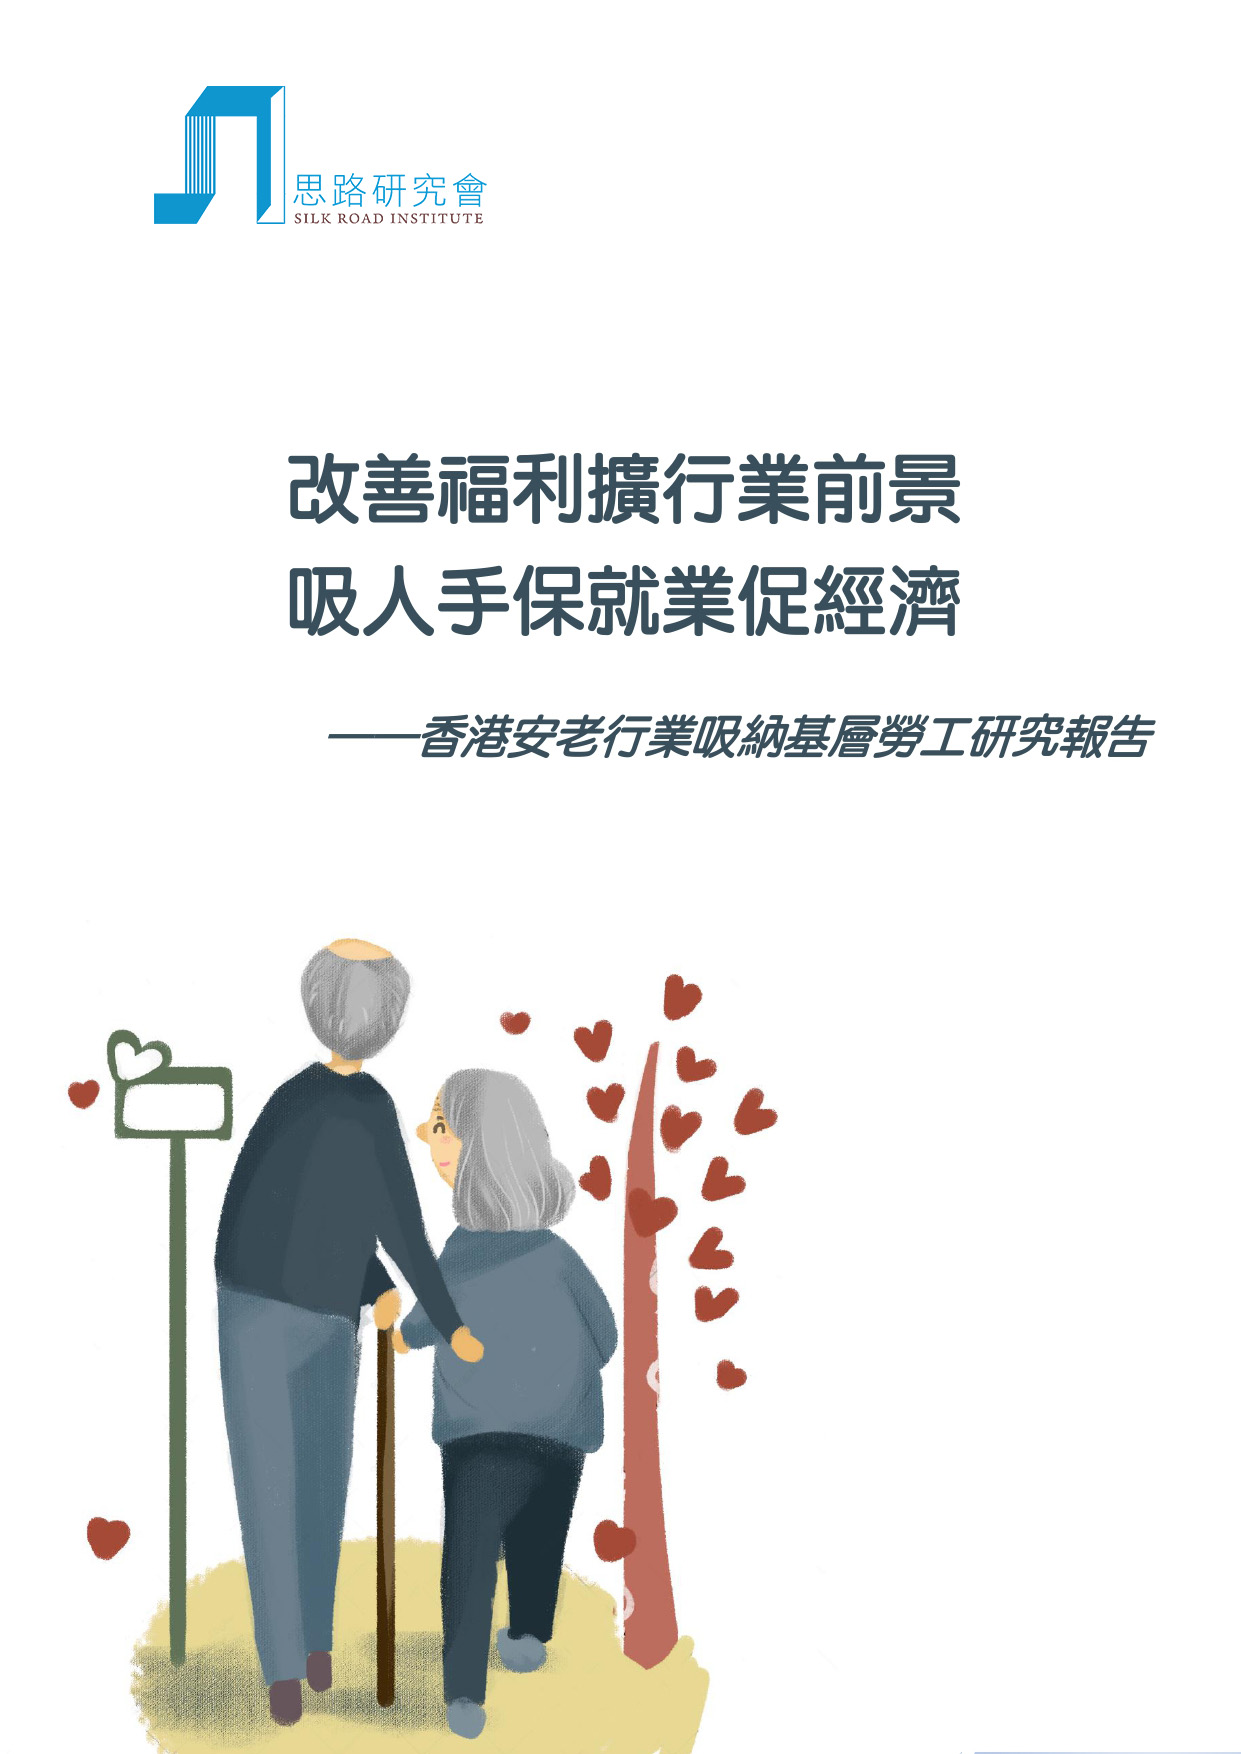 香港安老行業吸納基層勞工研究報告